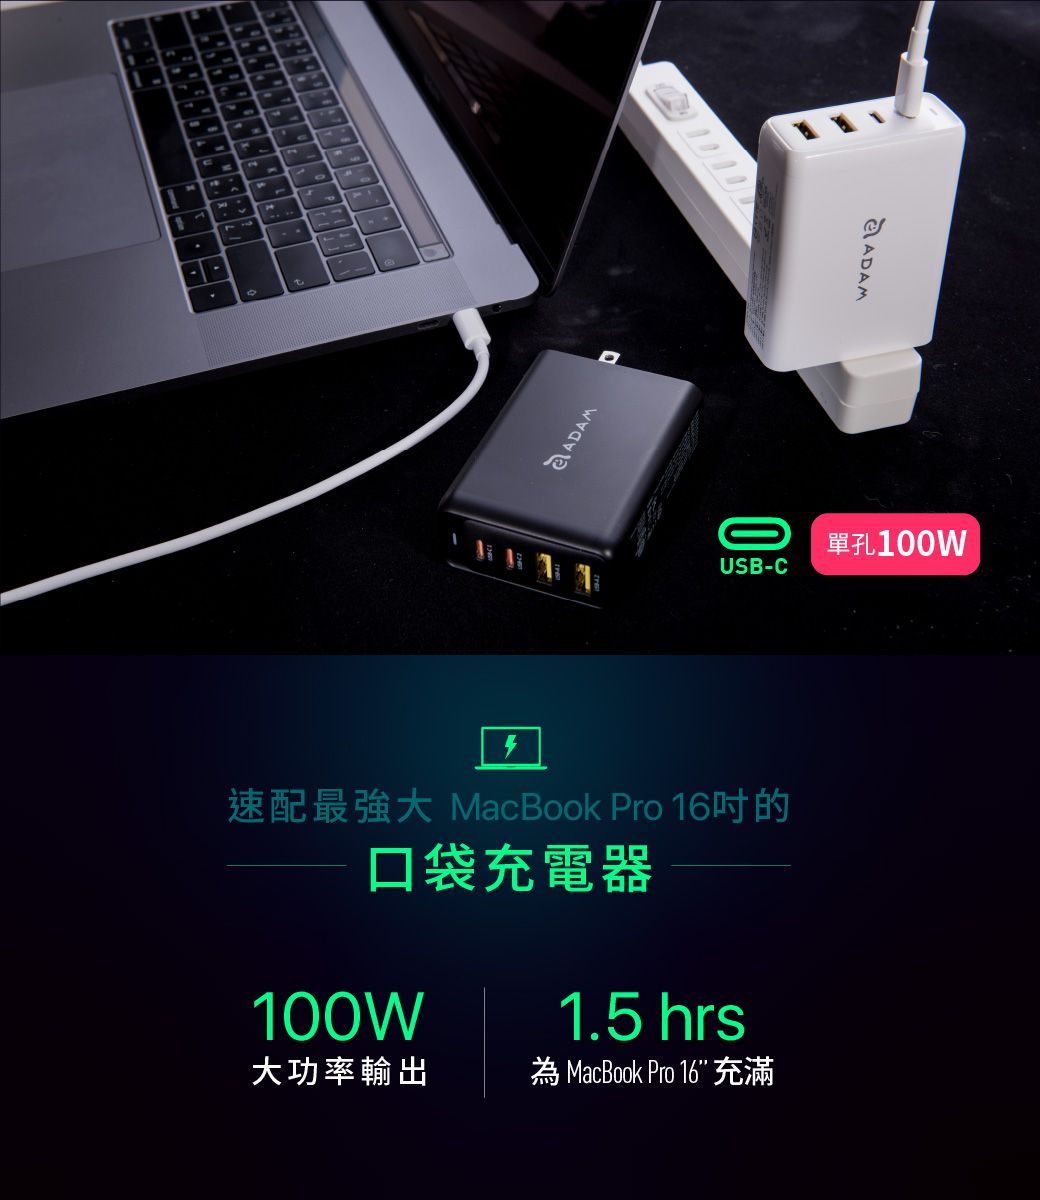 2tADAMADAM 單孔USB-C速配最強大 MacBook Pro 16的口袋充電器100W1.5 hrs大功率輸出為 MacBook Pro 16 充滿